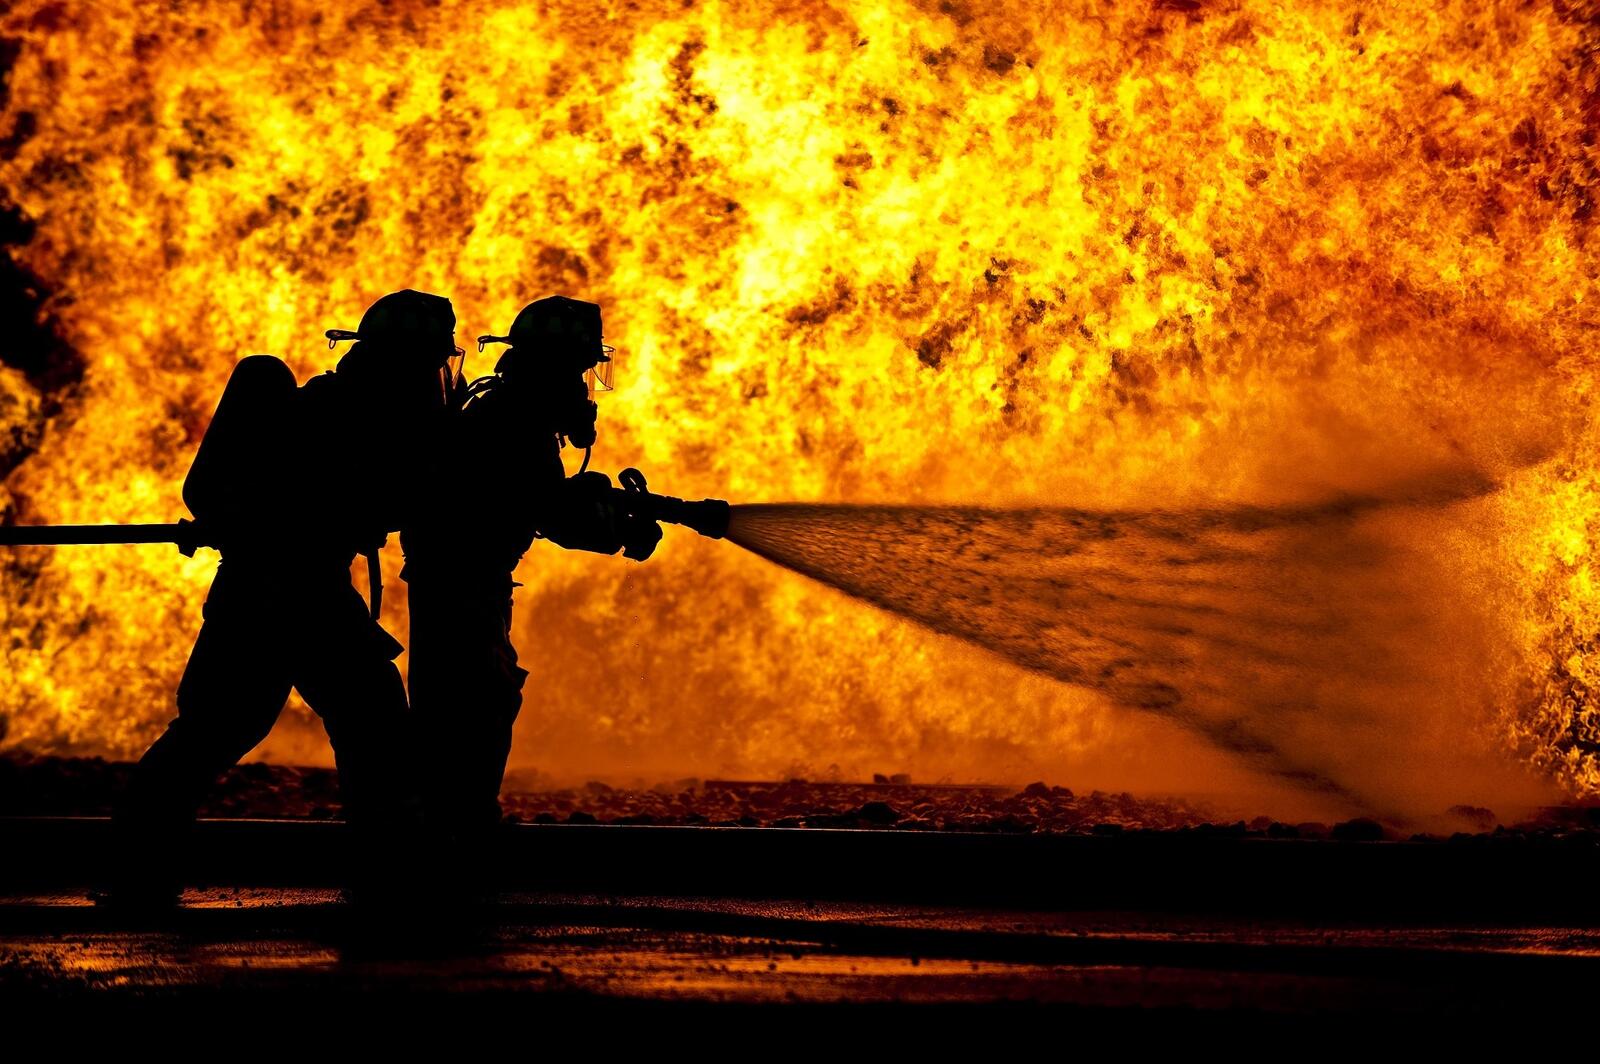 Бесплатное фото Силуэт пожарников на фоне большого пожара